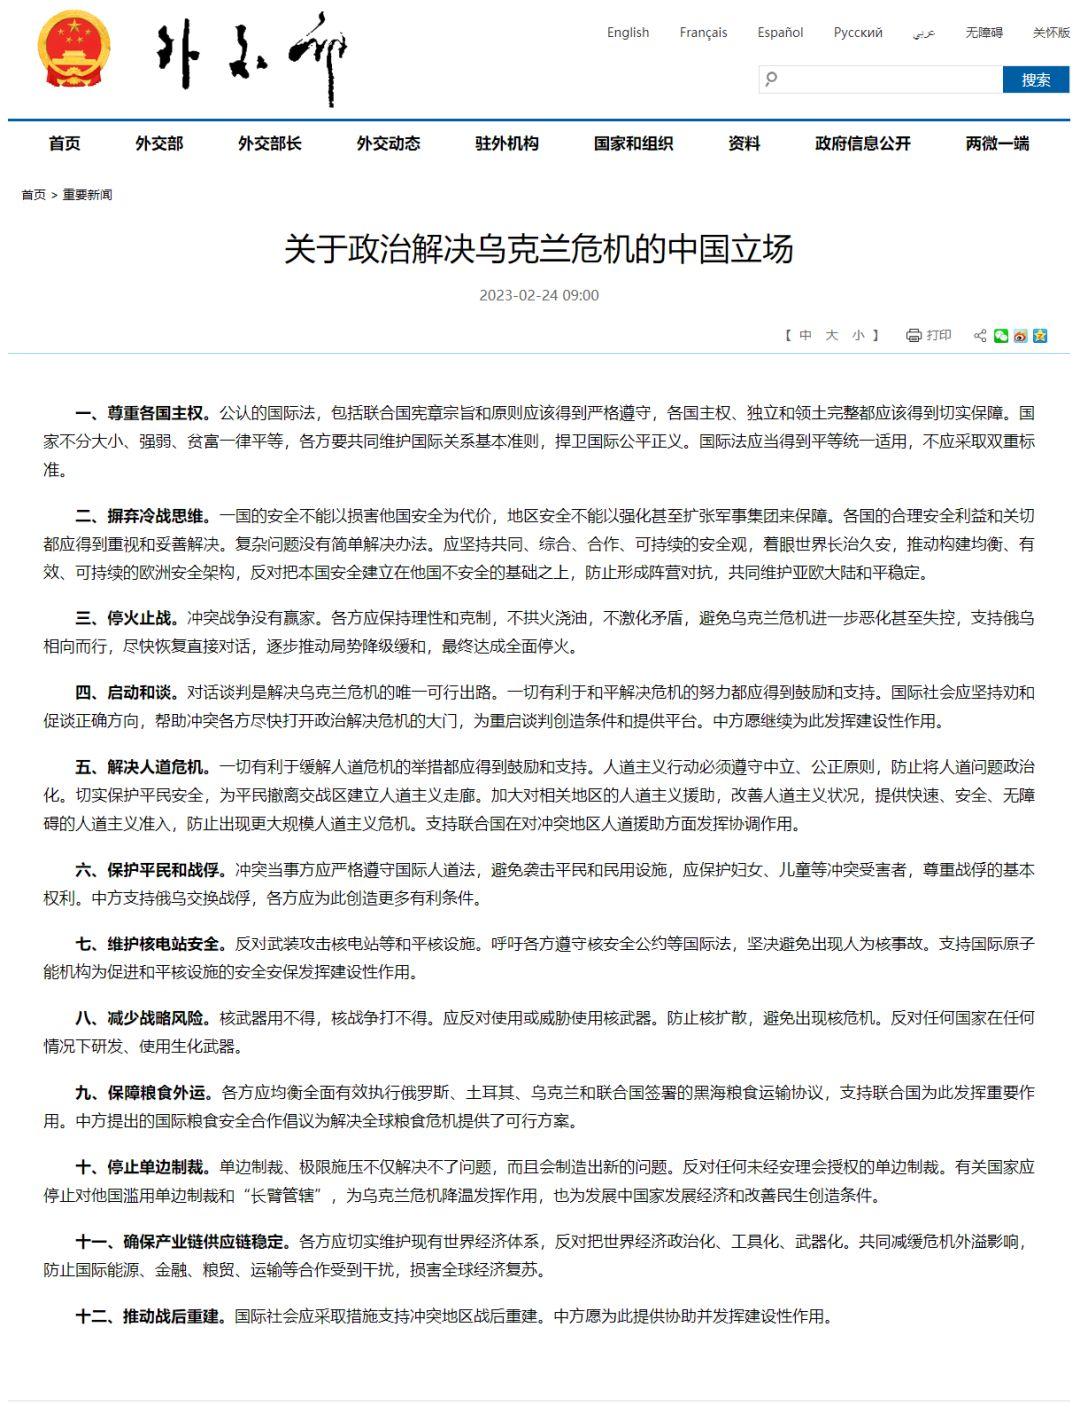 中华人民共和国外交部关于政治解决乌克兰危机的中国立场